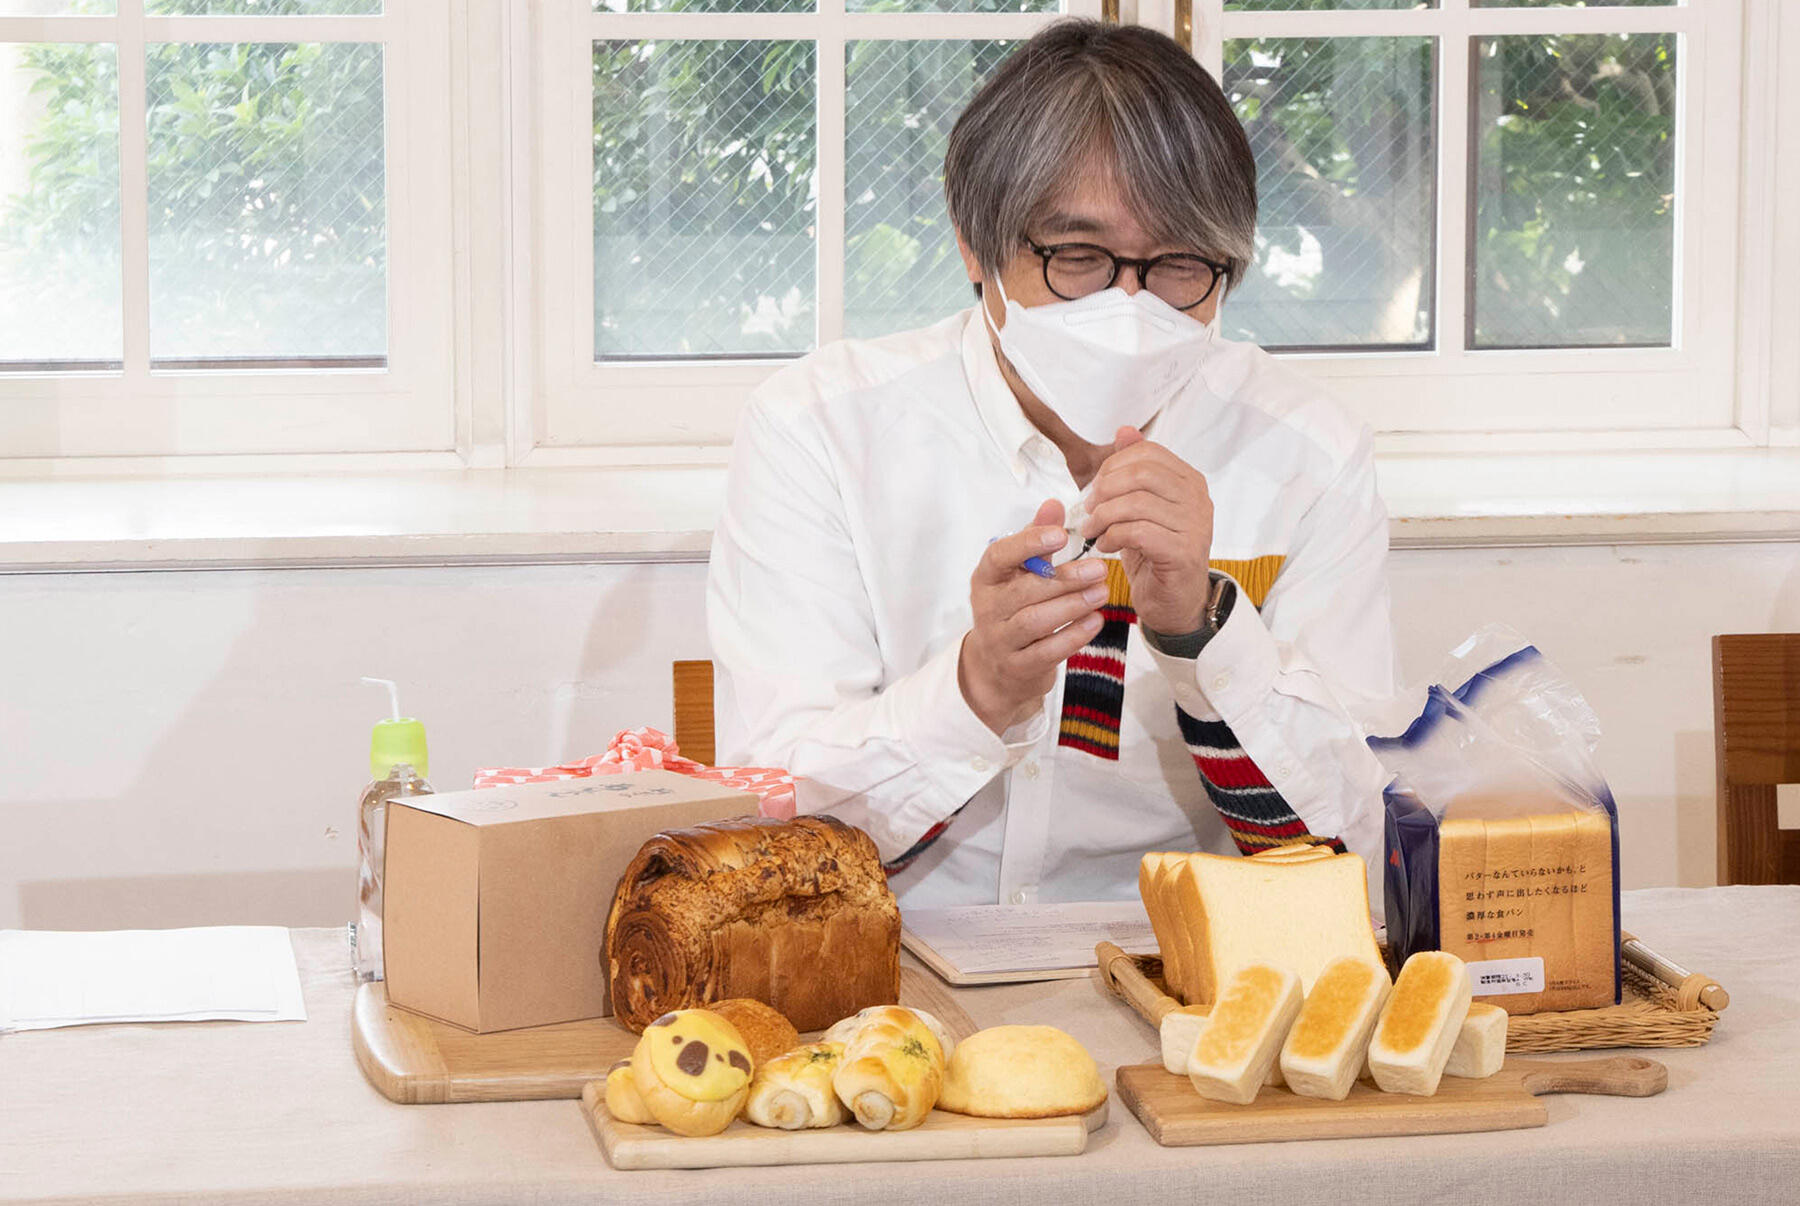 小山薫堂さんも驚く 食パン のアイデア続々 もっと自由においしくパンを食べよう みんなのhappyパン イベント Dancyu食いしん坊俱楽部 公式 Dancyu ダンチュウ